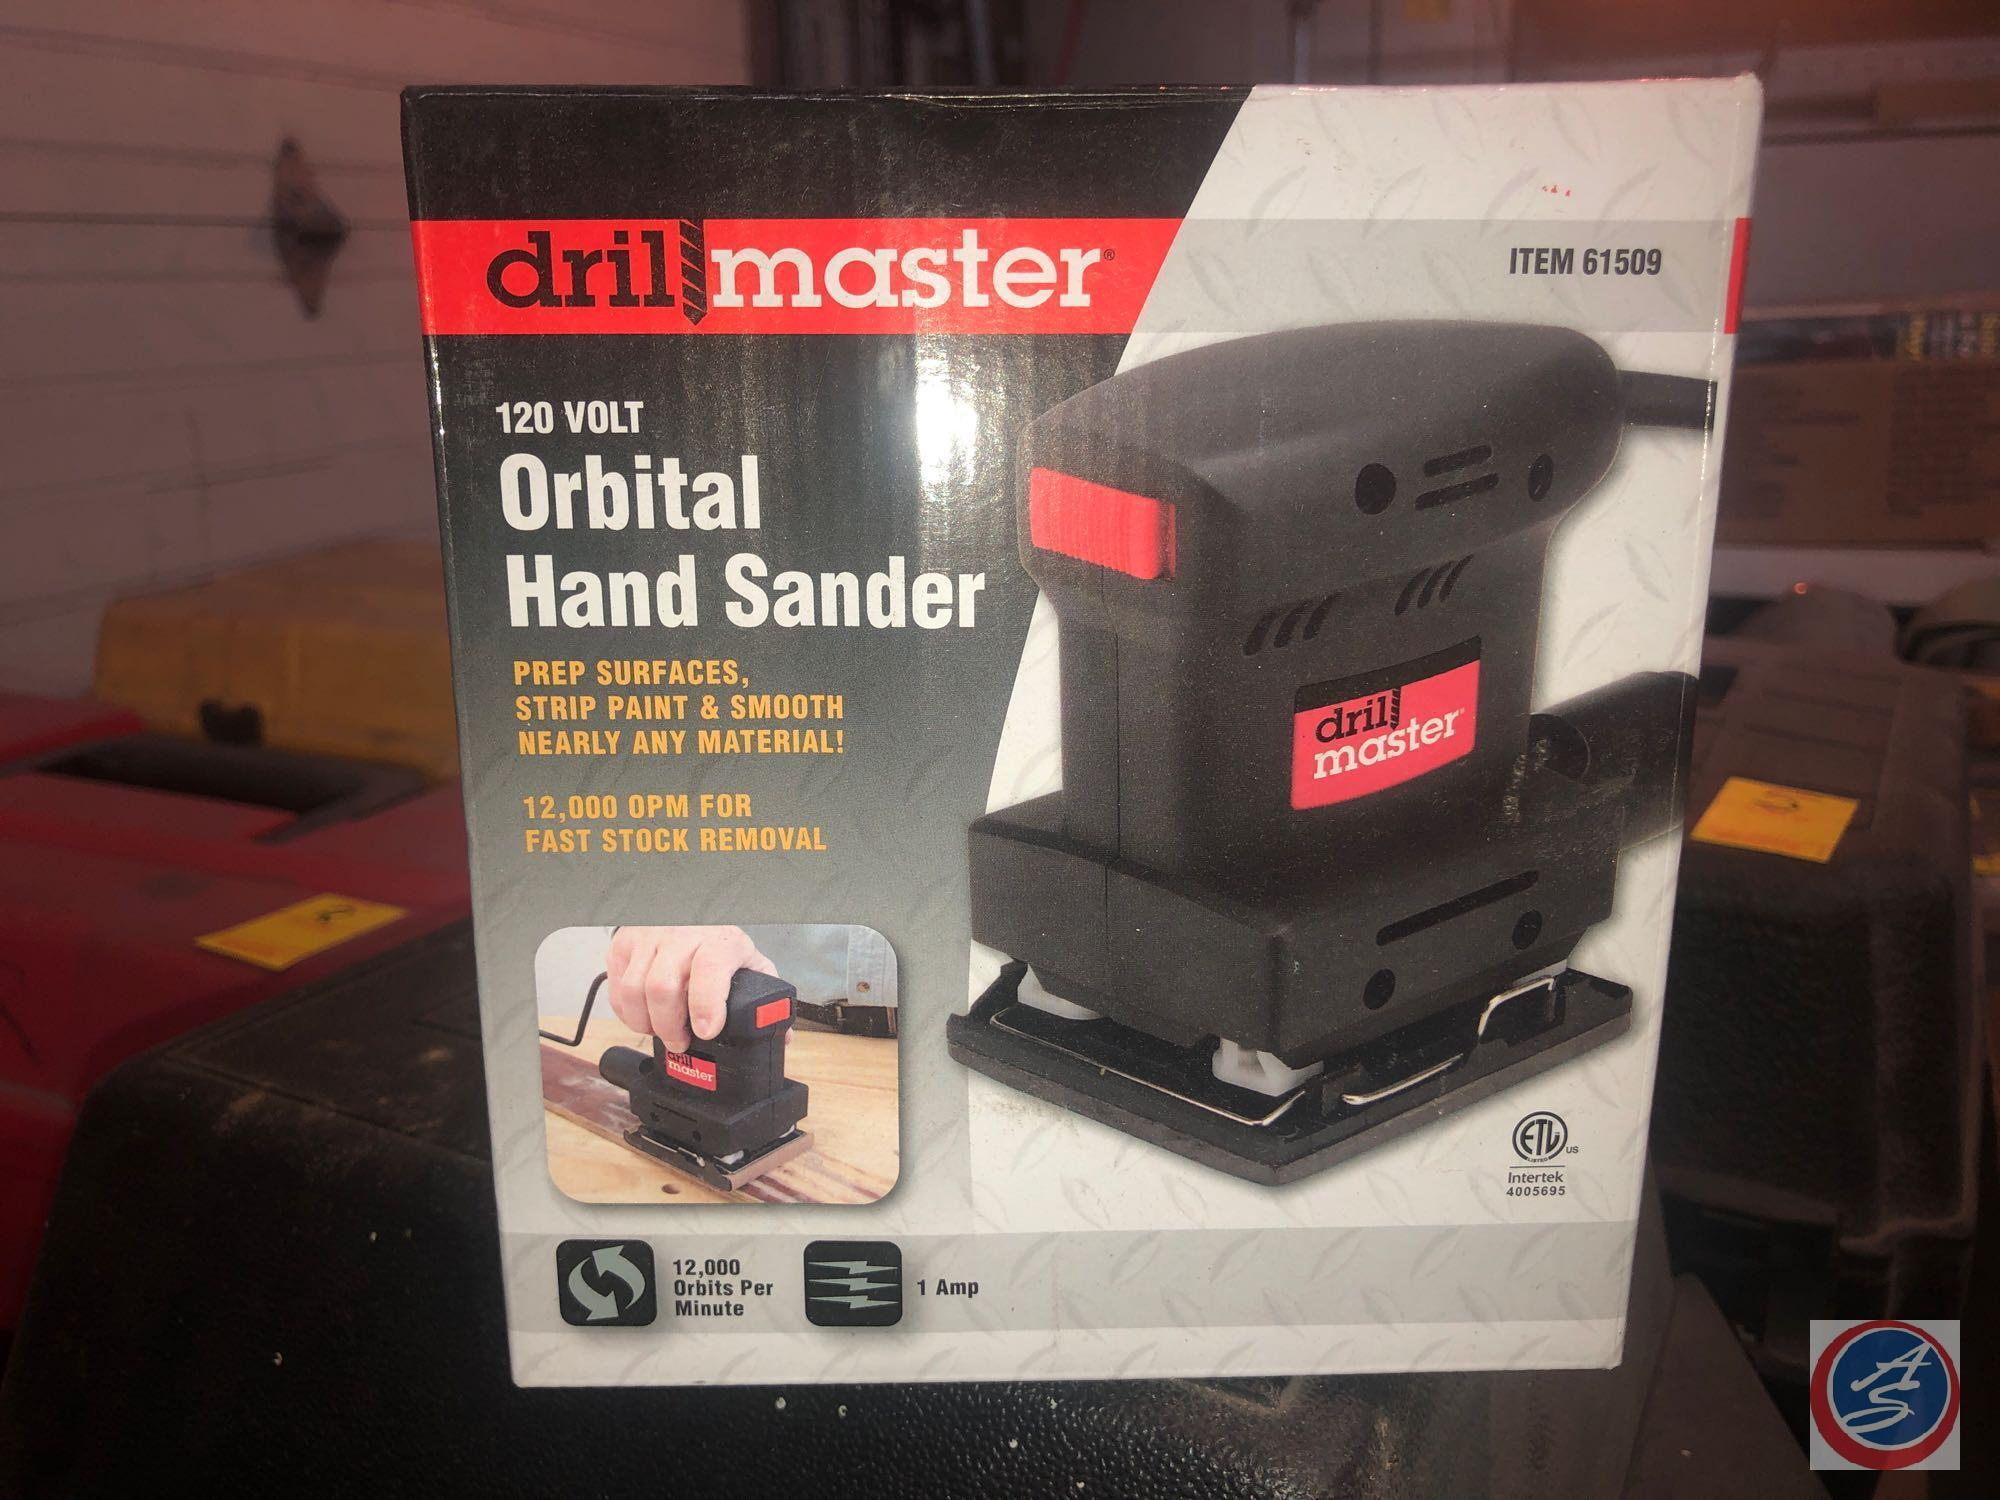 Drill Master 120 Volt Orbital Hand Sander Item No. 61509 {{NEW IN BOX}}, Drill Master Orbital Hand